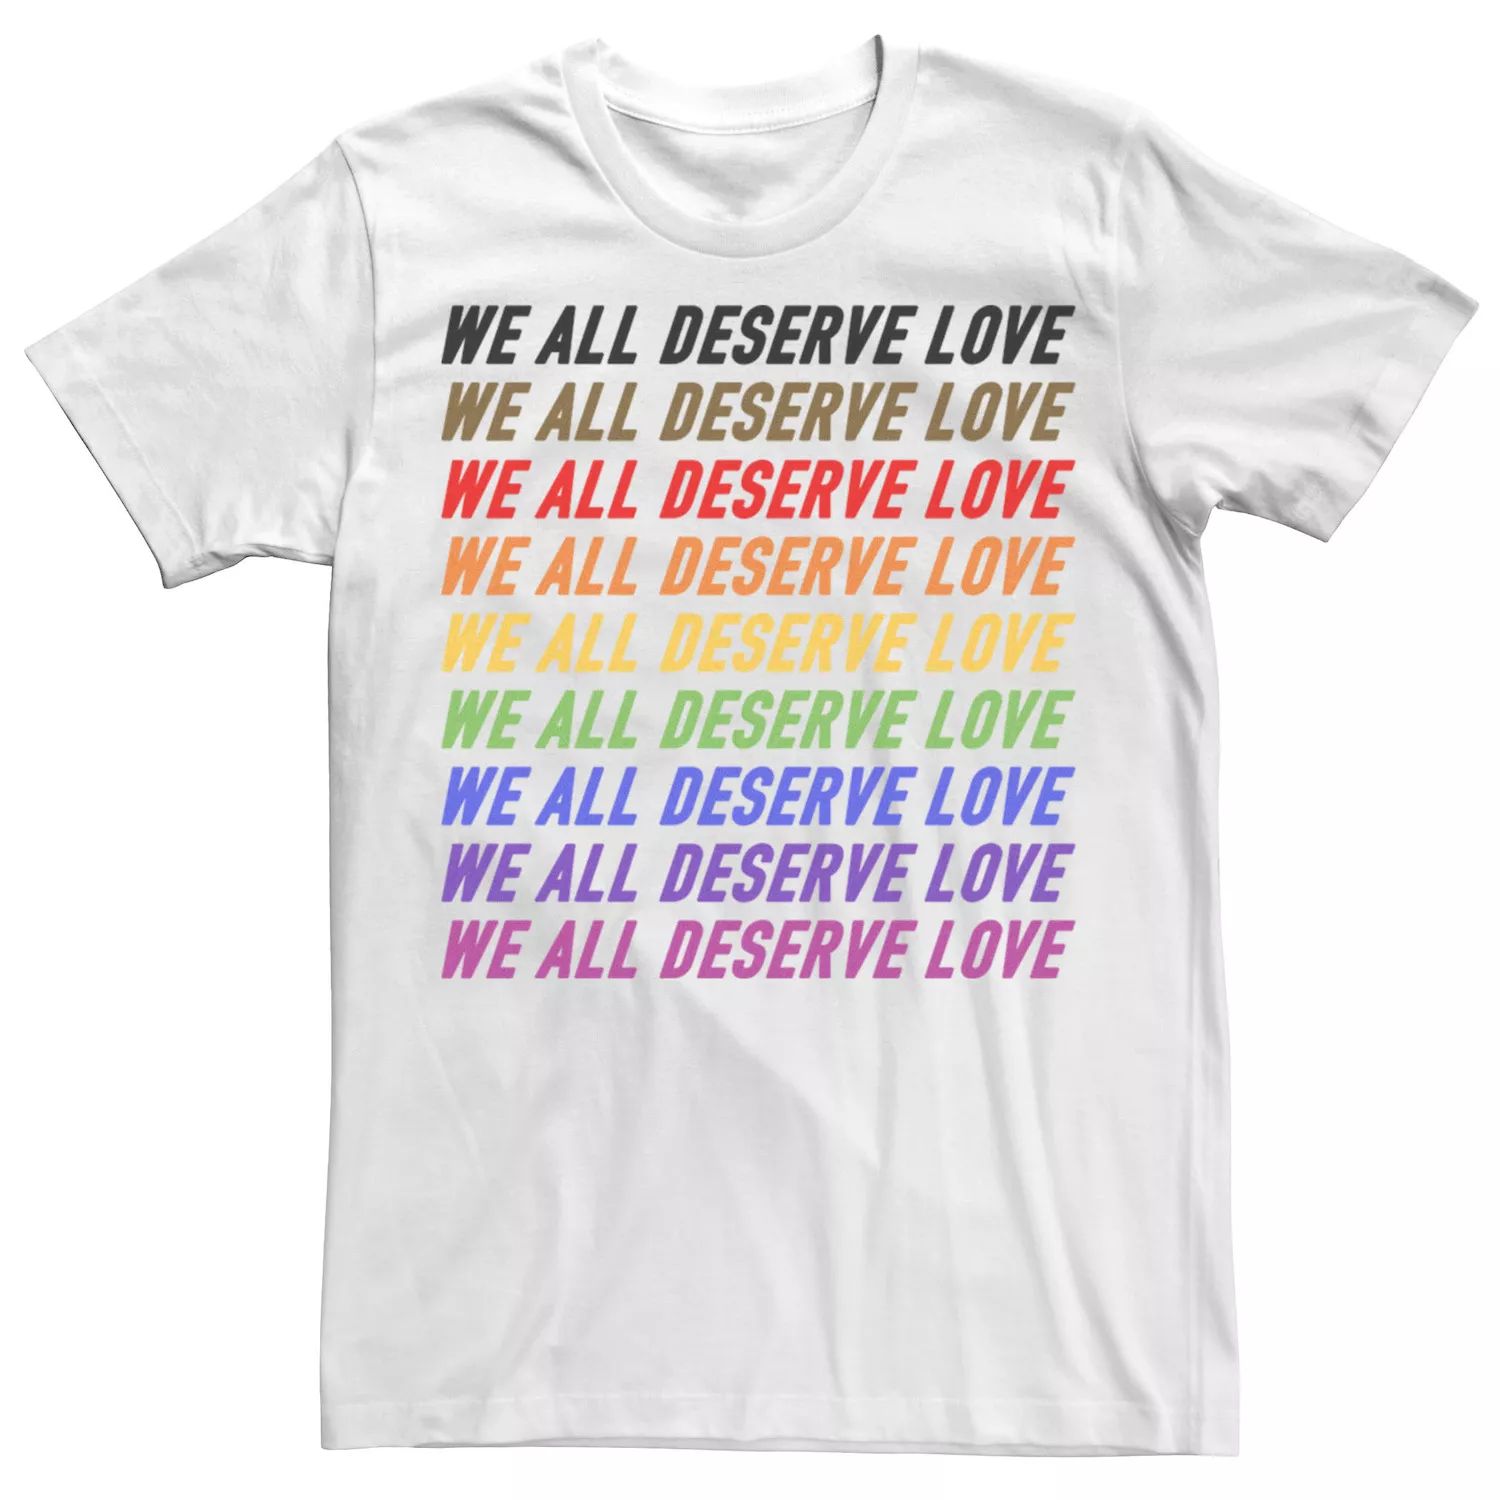 Мужская футболка Pride Deserve Love Licensed Character